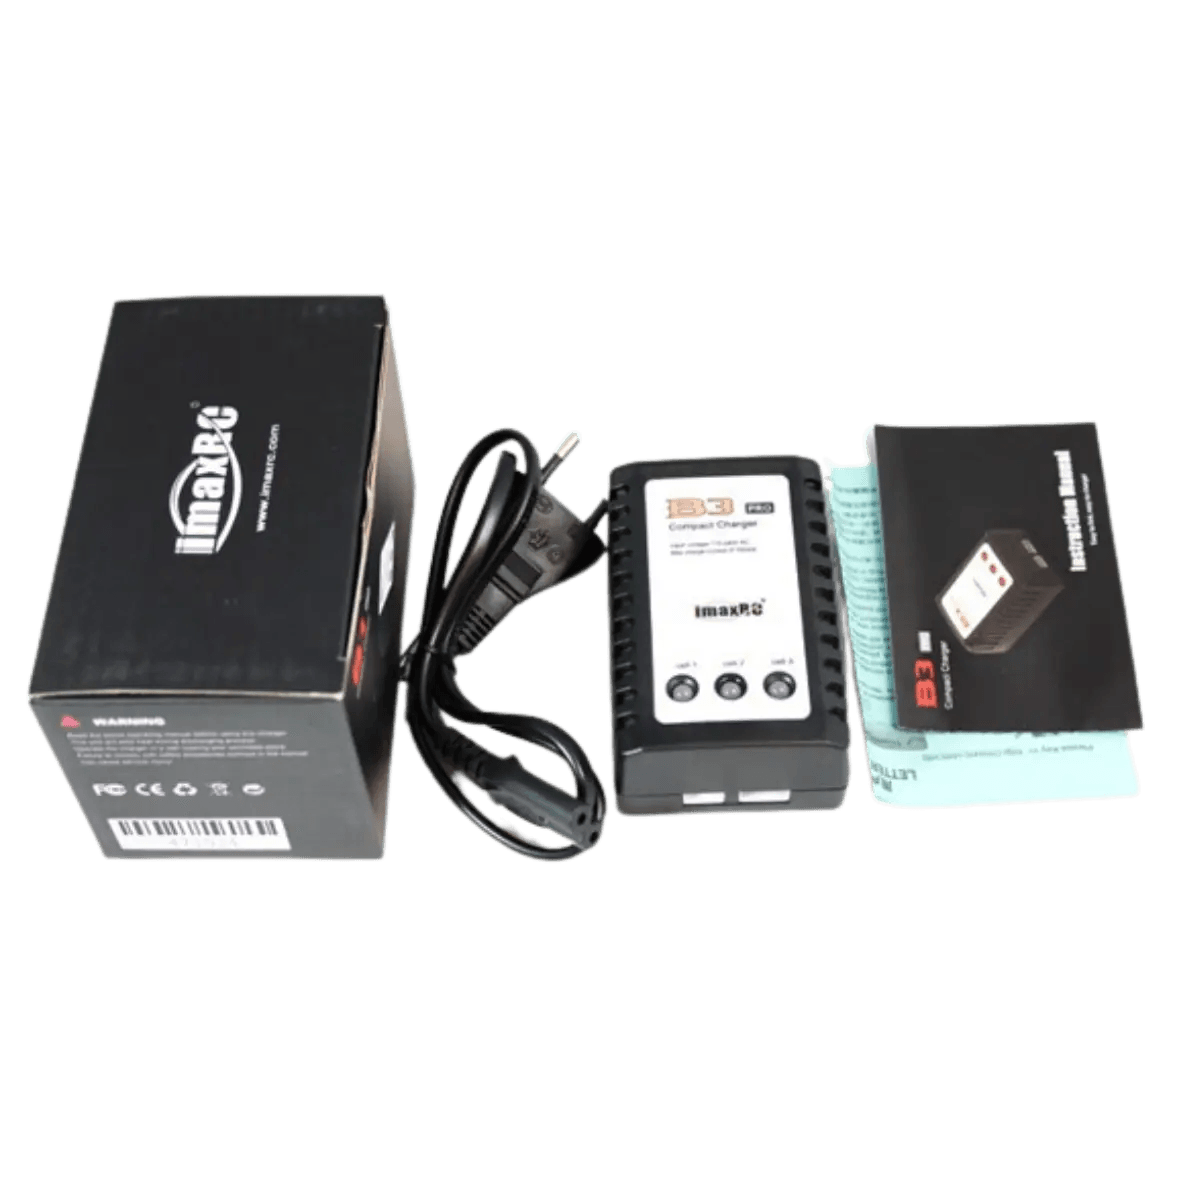 Chargeur de batterie Li-Po 7.4V, 11.1V 2S, 3S pour Imax, Fuchsia, AEG, Airsoft